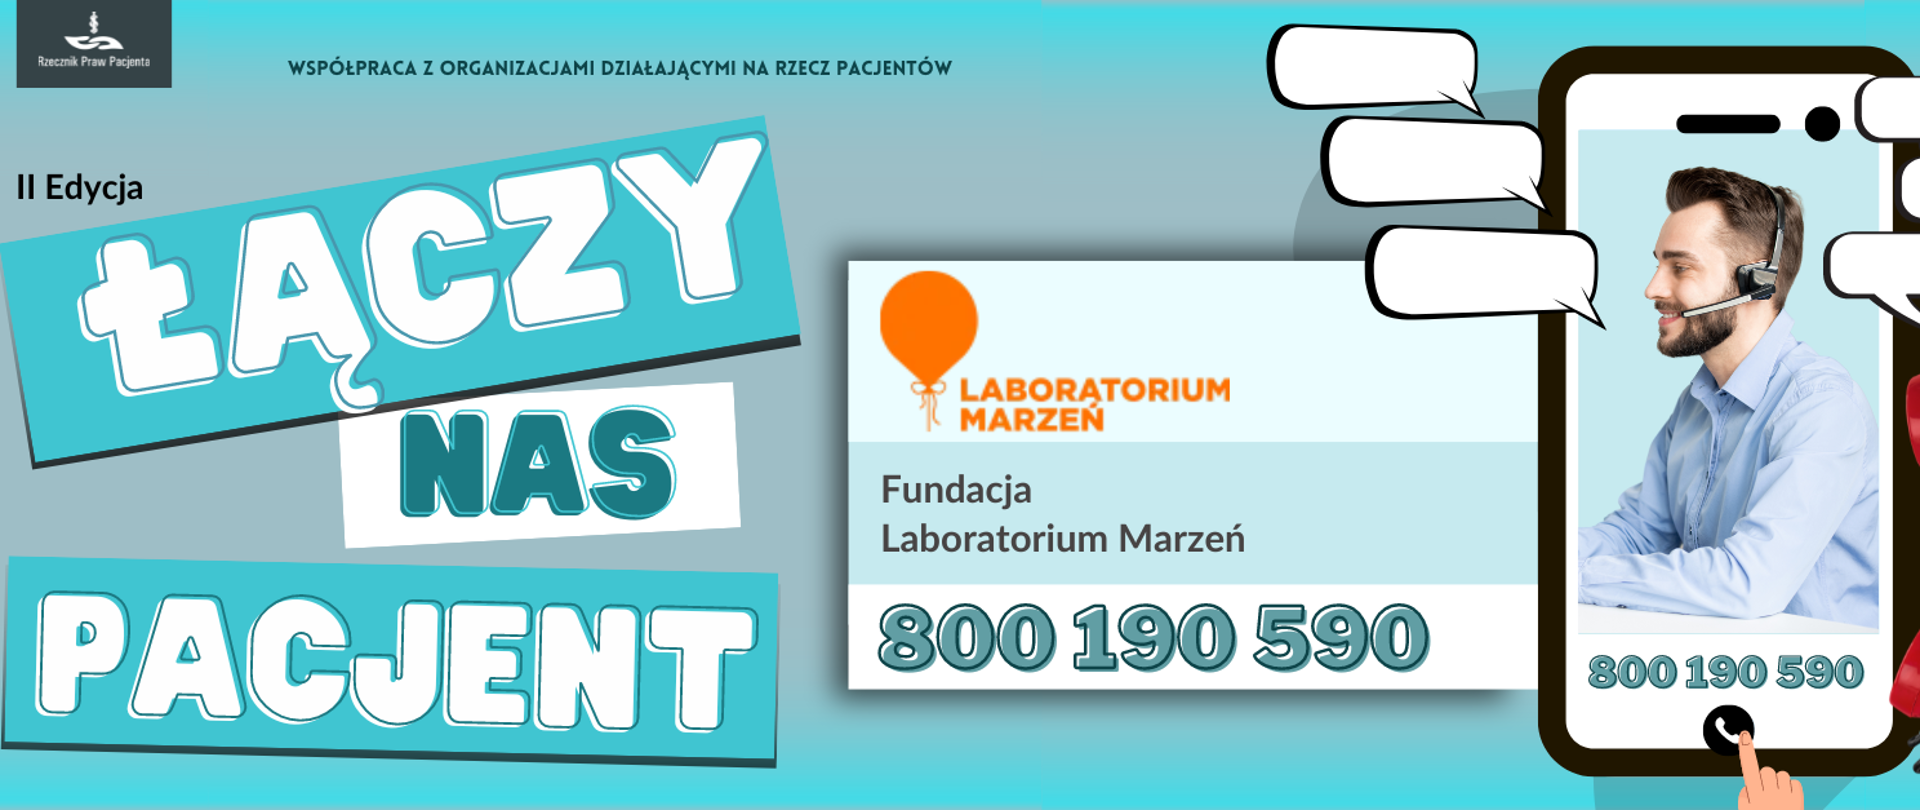 Fundacja__Laboratorium_Marzeń